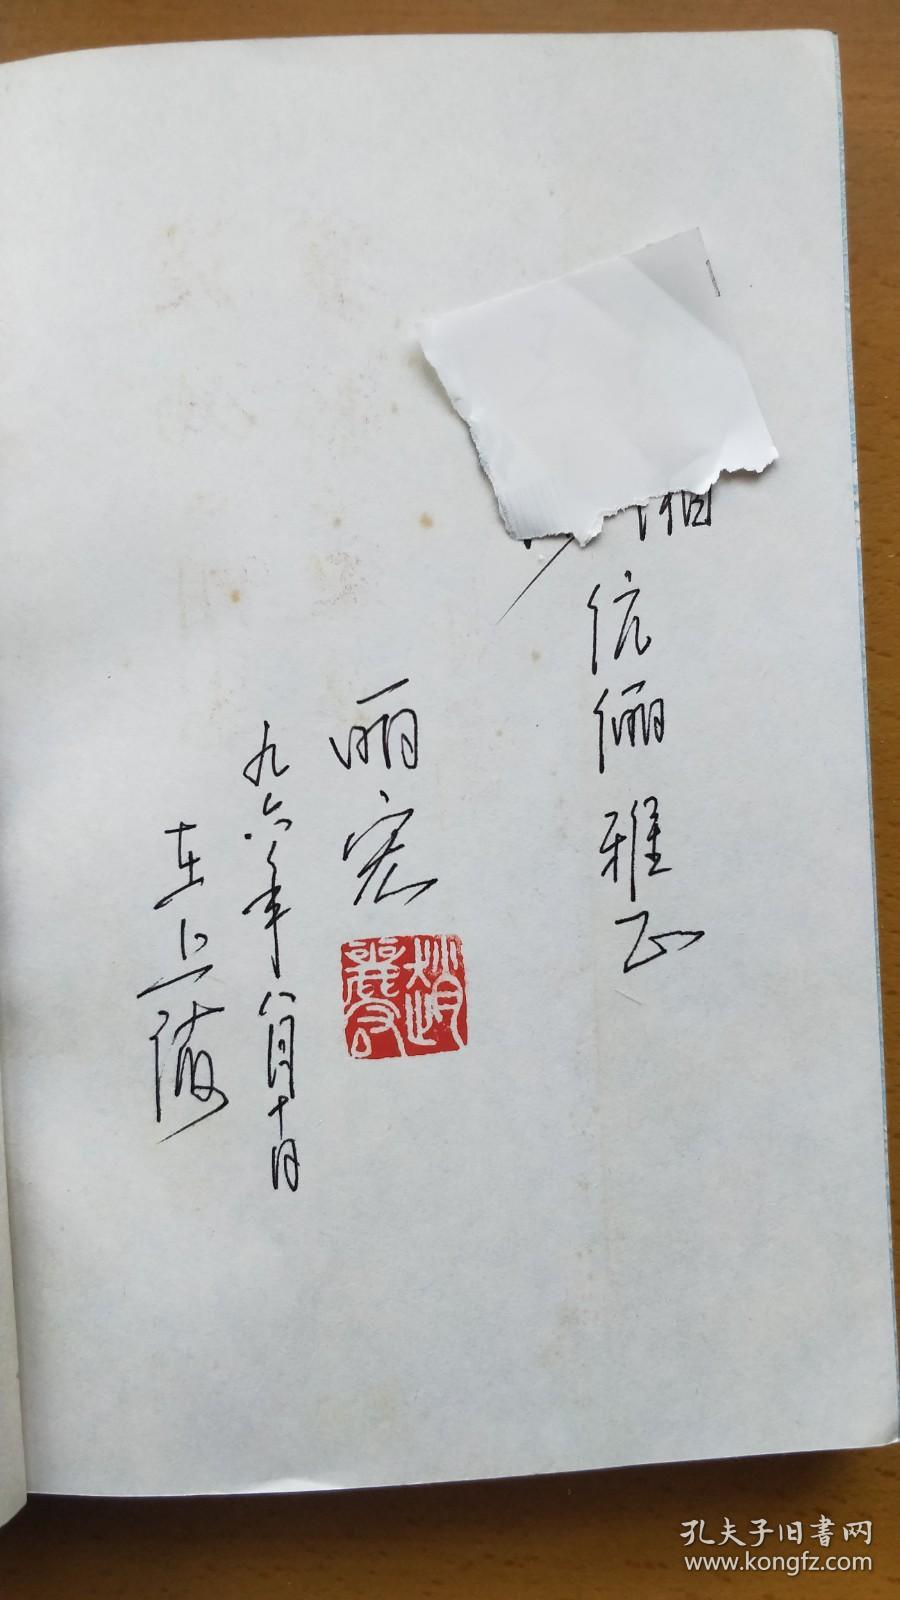 A01  赵丽宏 签名本5册，信札1页：《艺品》《喧嚣与宁静（名人日记）》《抒情诗151首》《青春之翼》《上海表情》『A01~A50为同一来源』